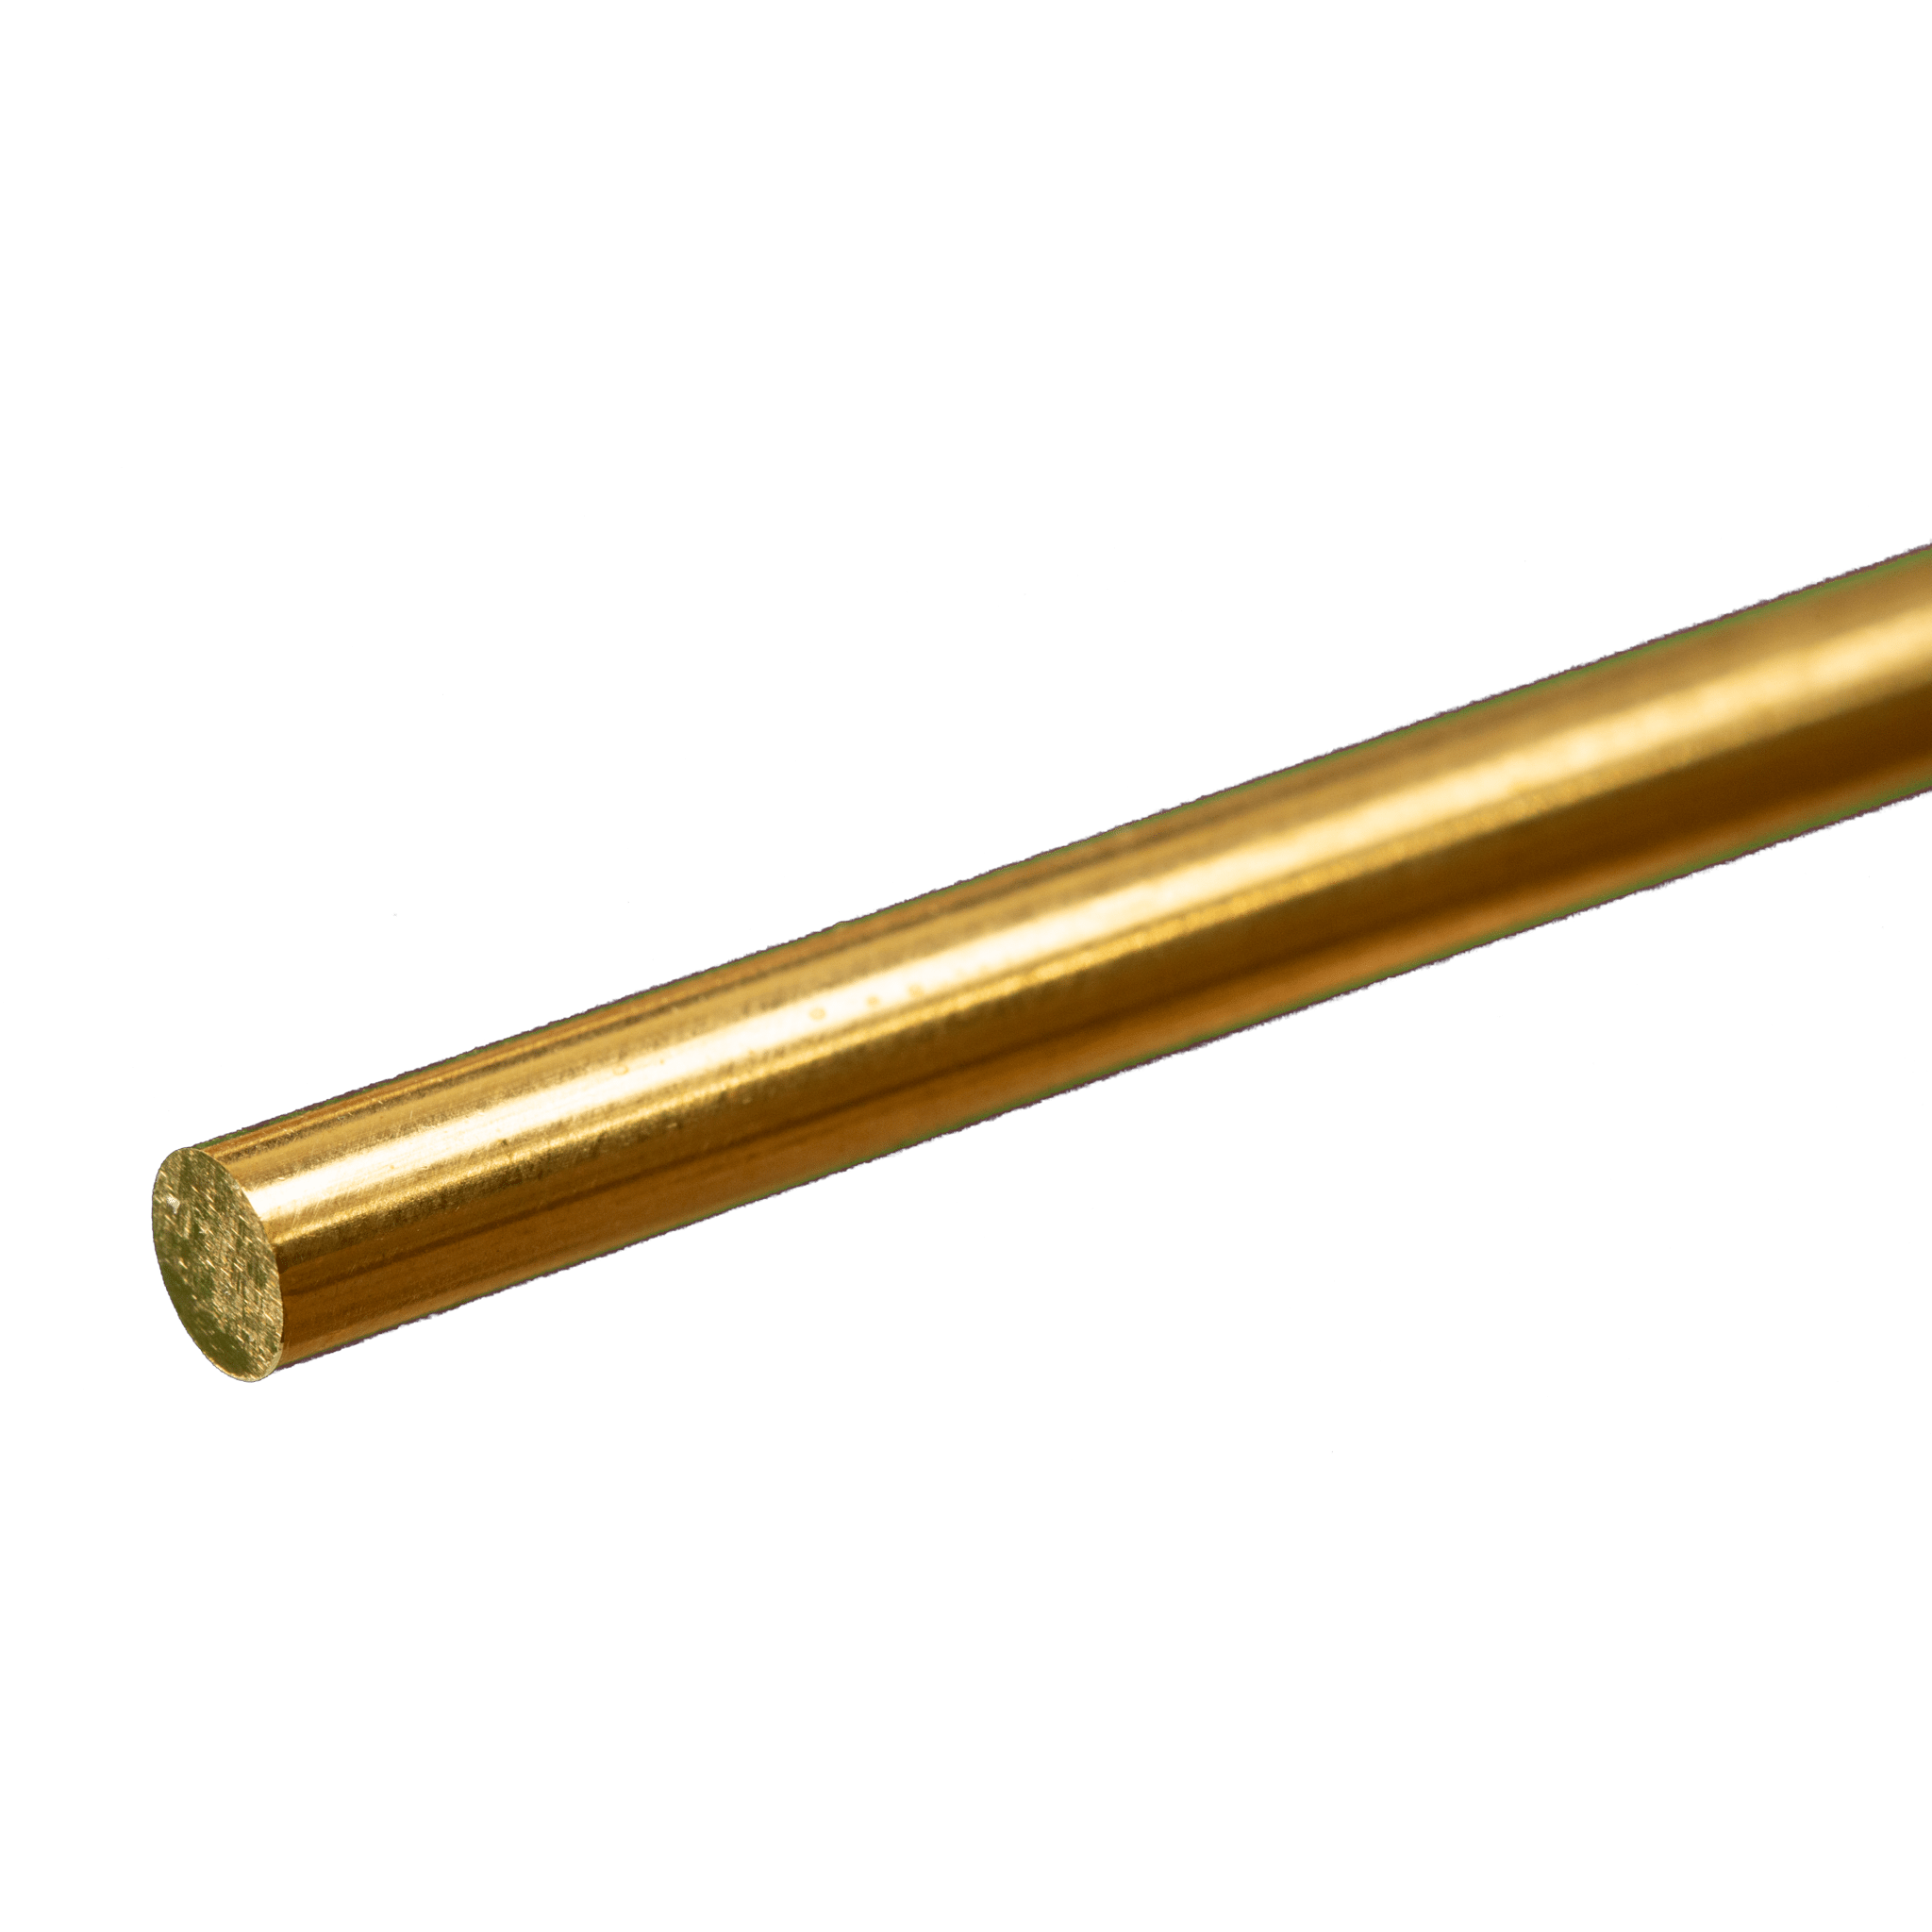 K&S Metals 8166 Round Brass Rod 3/16" OD x 12" Long (1 Piece)